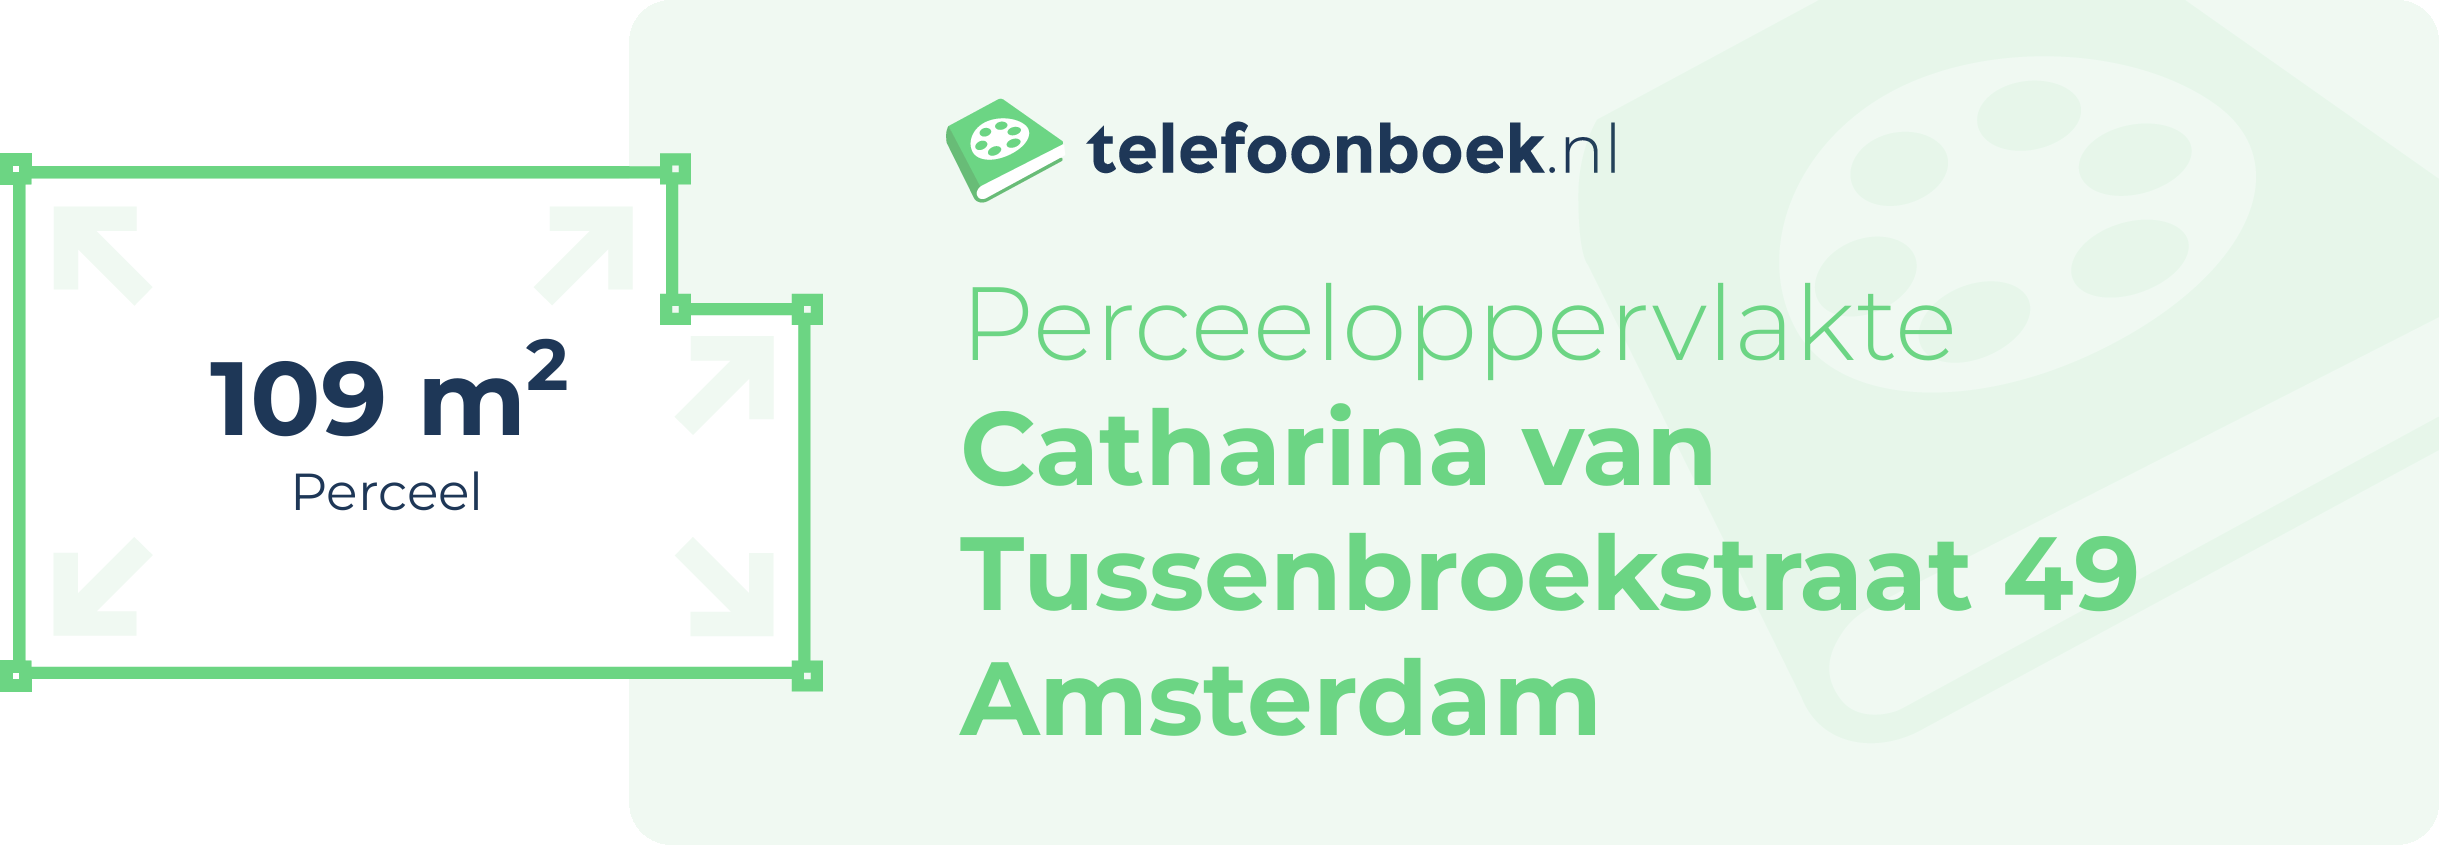 Perceeloppervlakte Catharina Van Tussenbroekstraat 49 Amsterdam